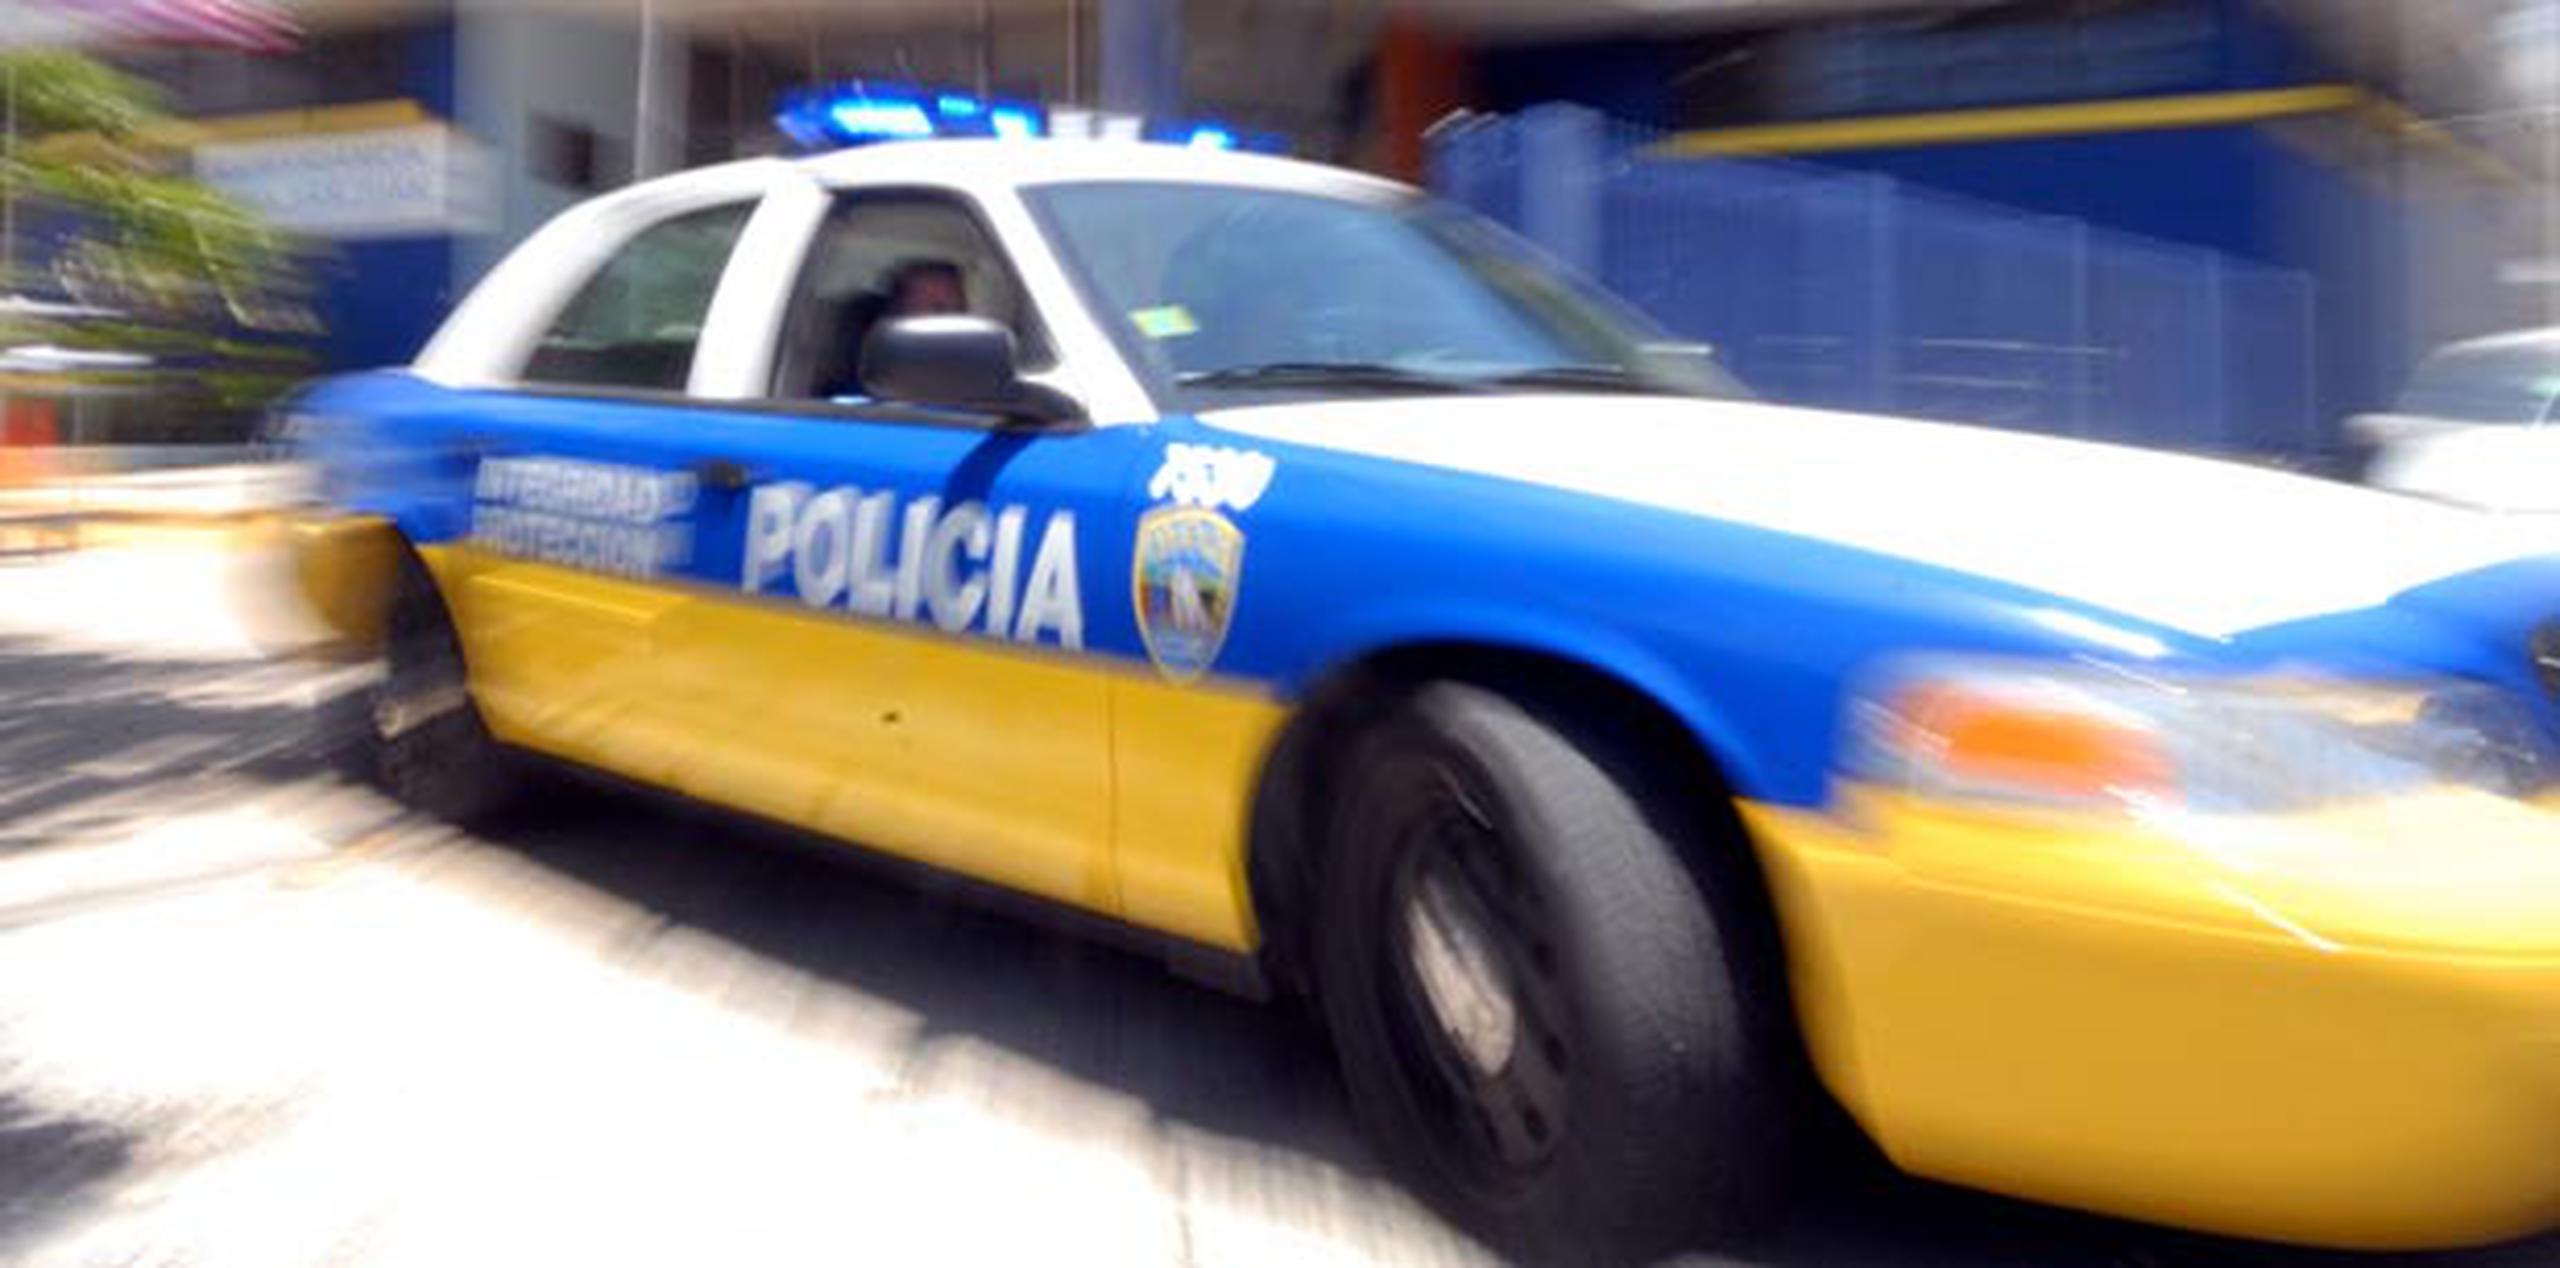 Según el informe policiaco, el individuo agredido con un machete fue identificado como Vicente Morell Santiago. (Archivo)